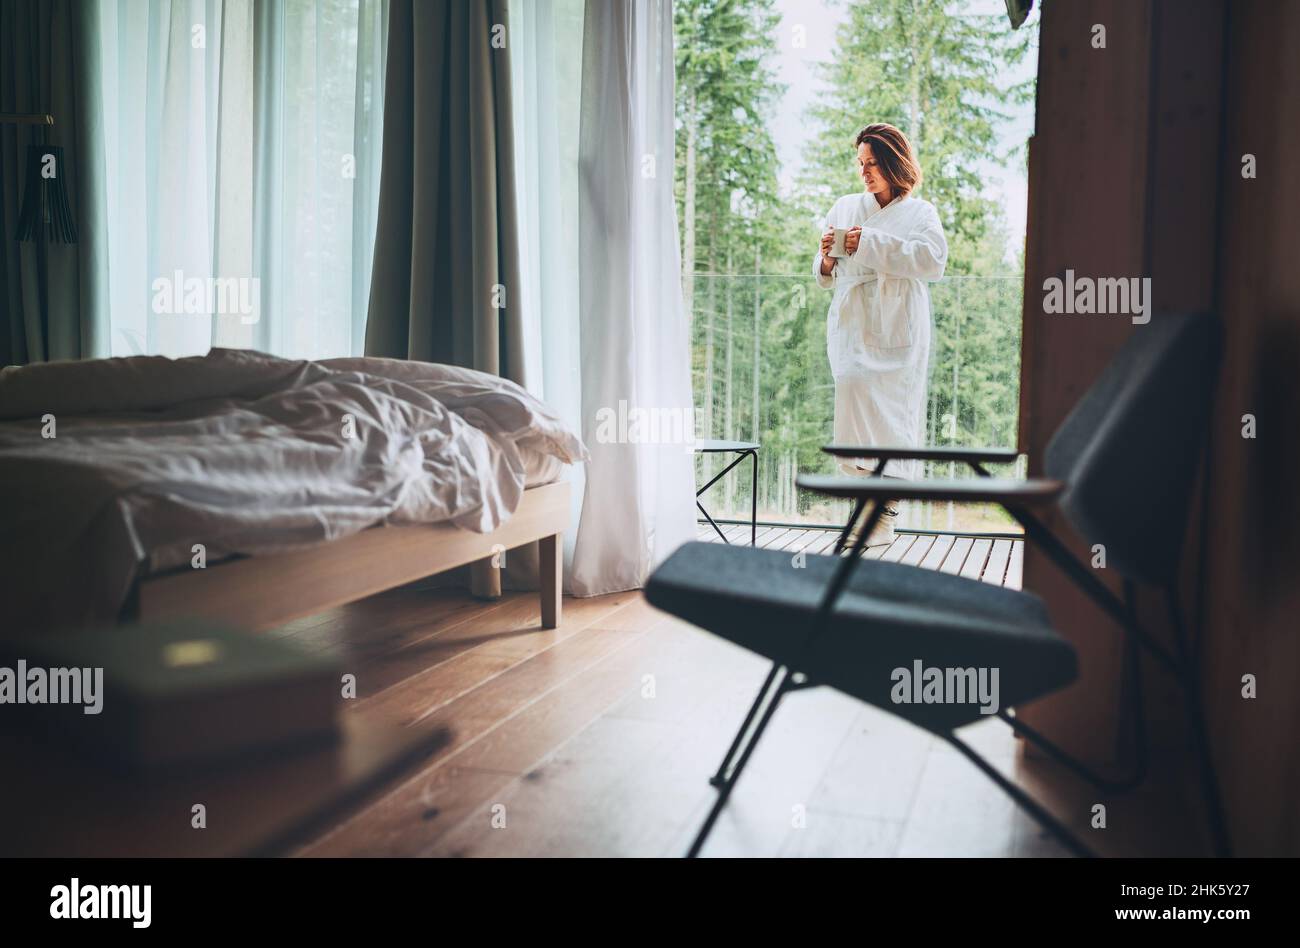 Frau gekleidet weißen Bademantel stehen auf Waldhaus Balkon und genießen frische Luft und Morgen Teetasse. Im Inneren eines skandinavischen Interior Design-Zimmers vi Stockfoto